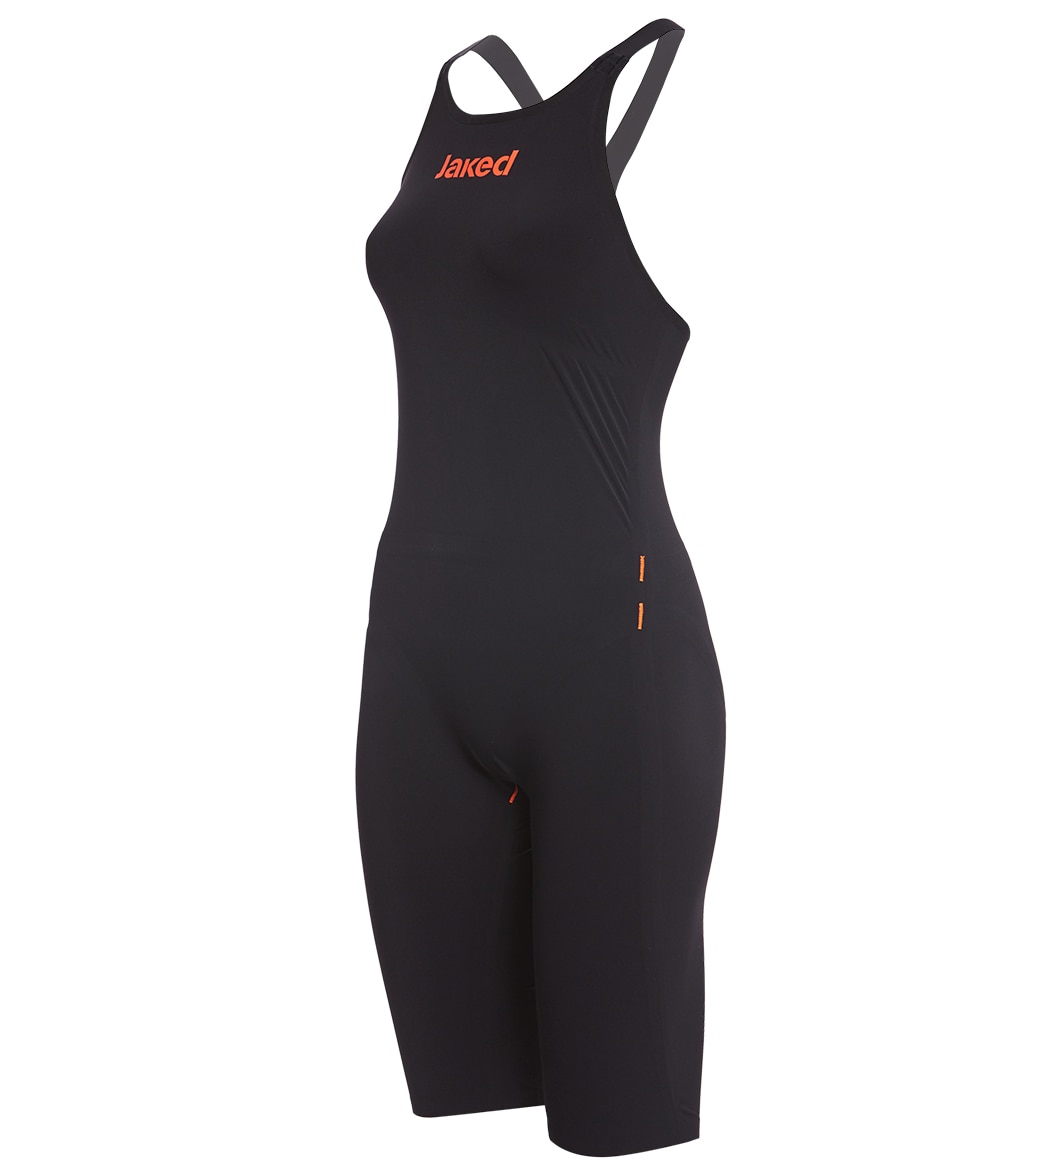 Jaked Women's Jkeel Backstroke Tech Suit Swimsuit